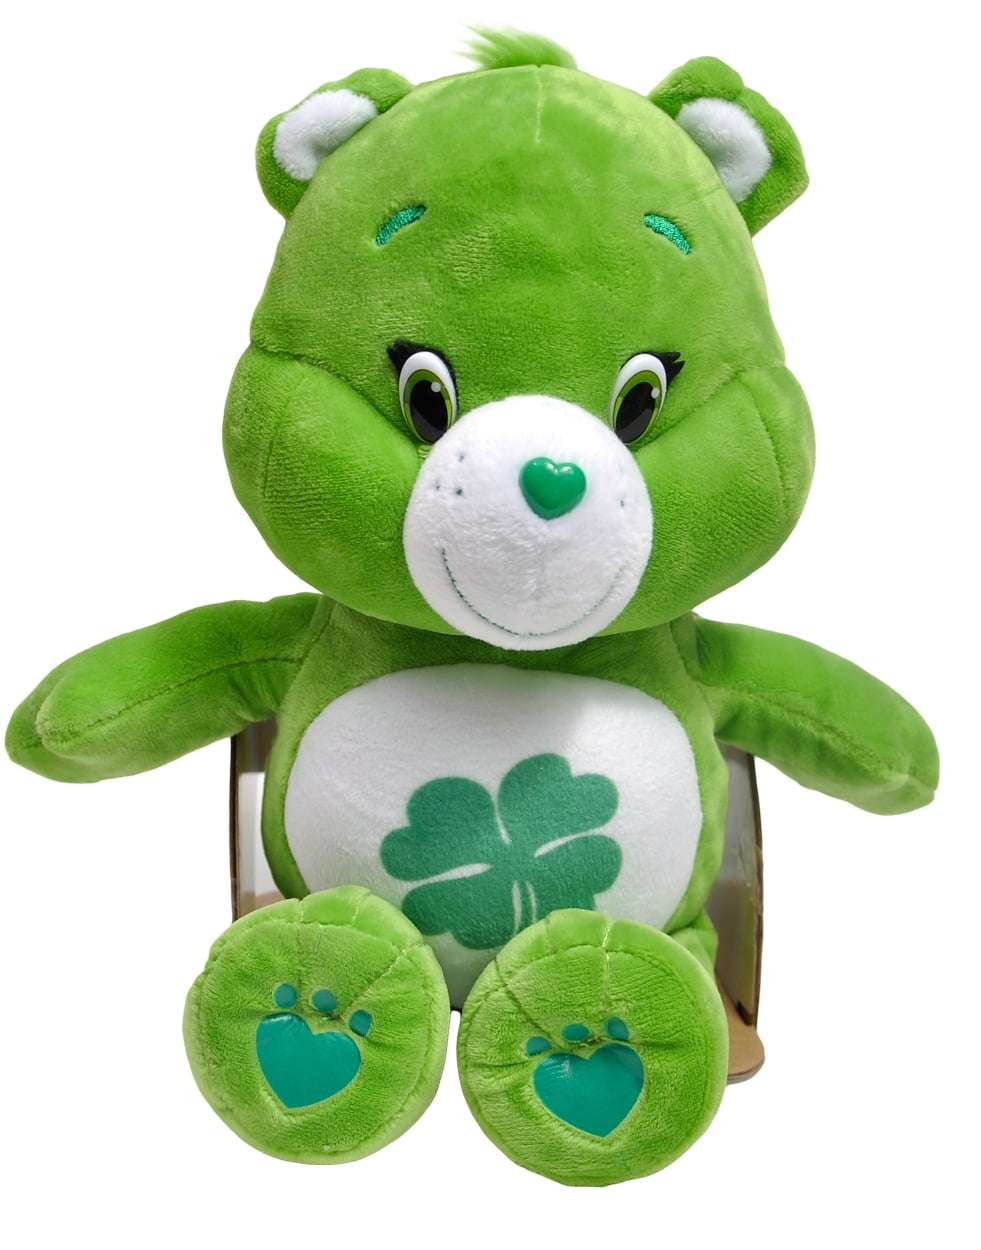 green care bear